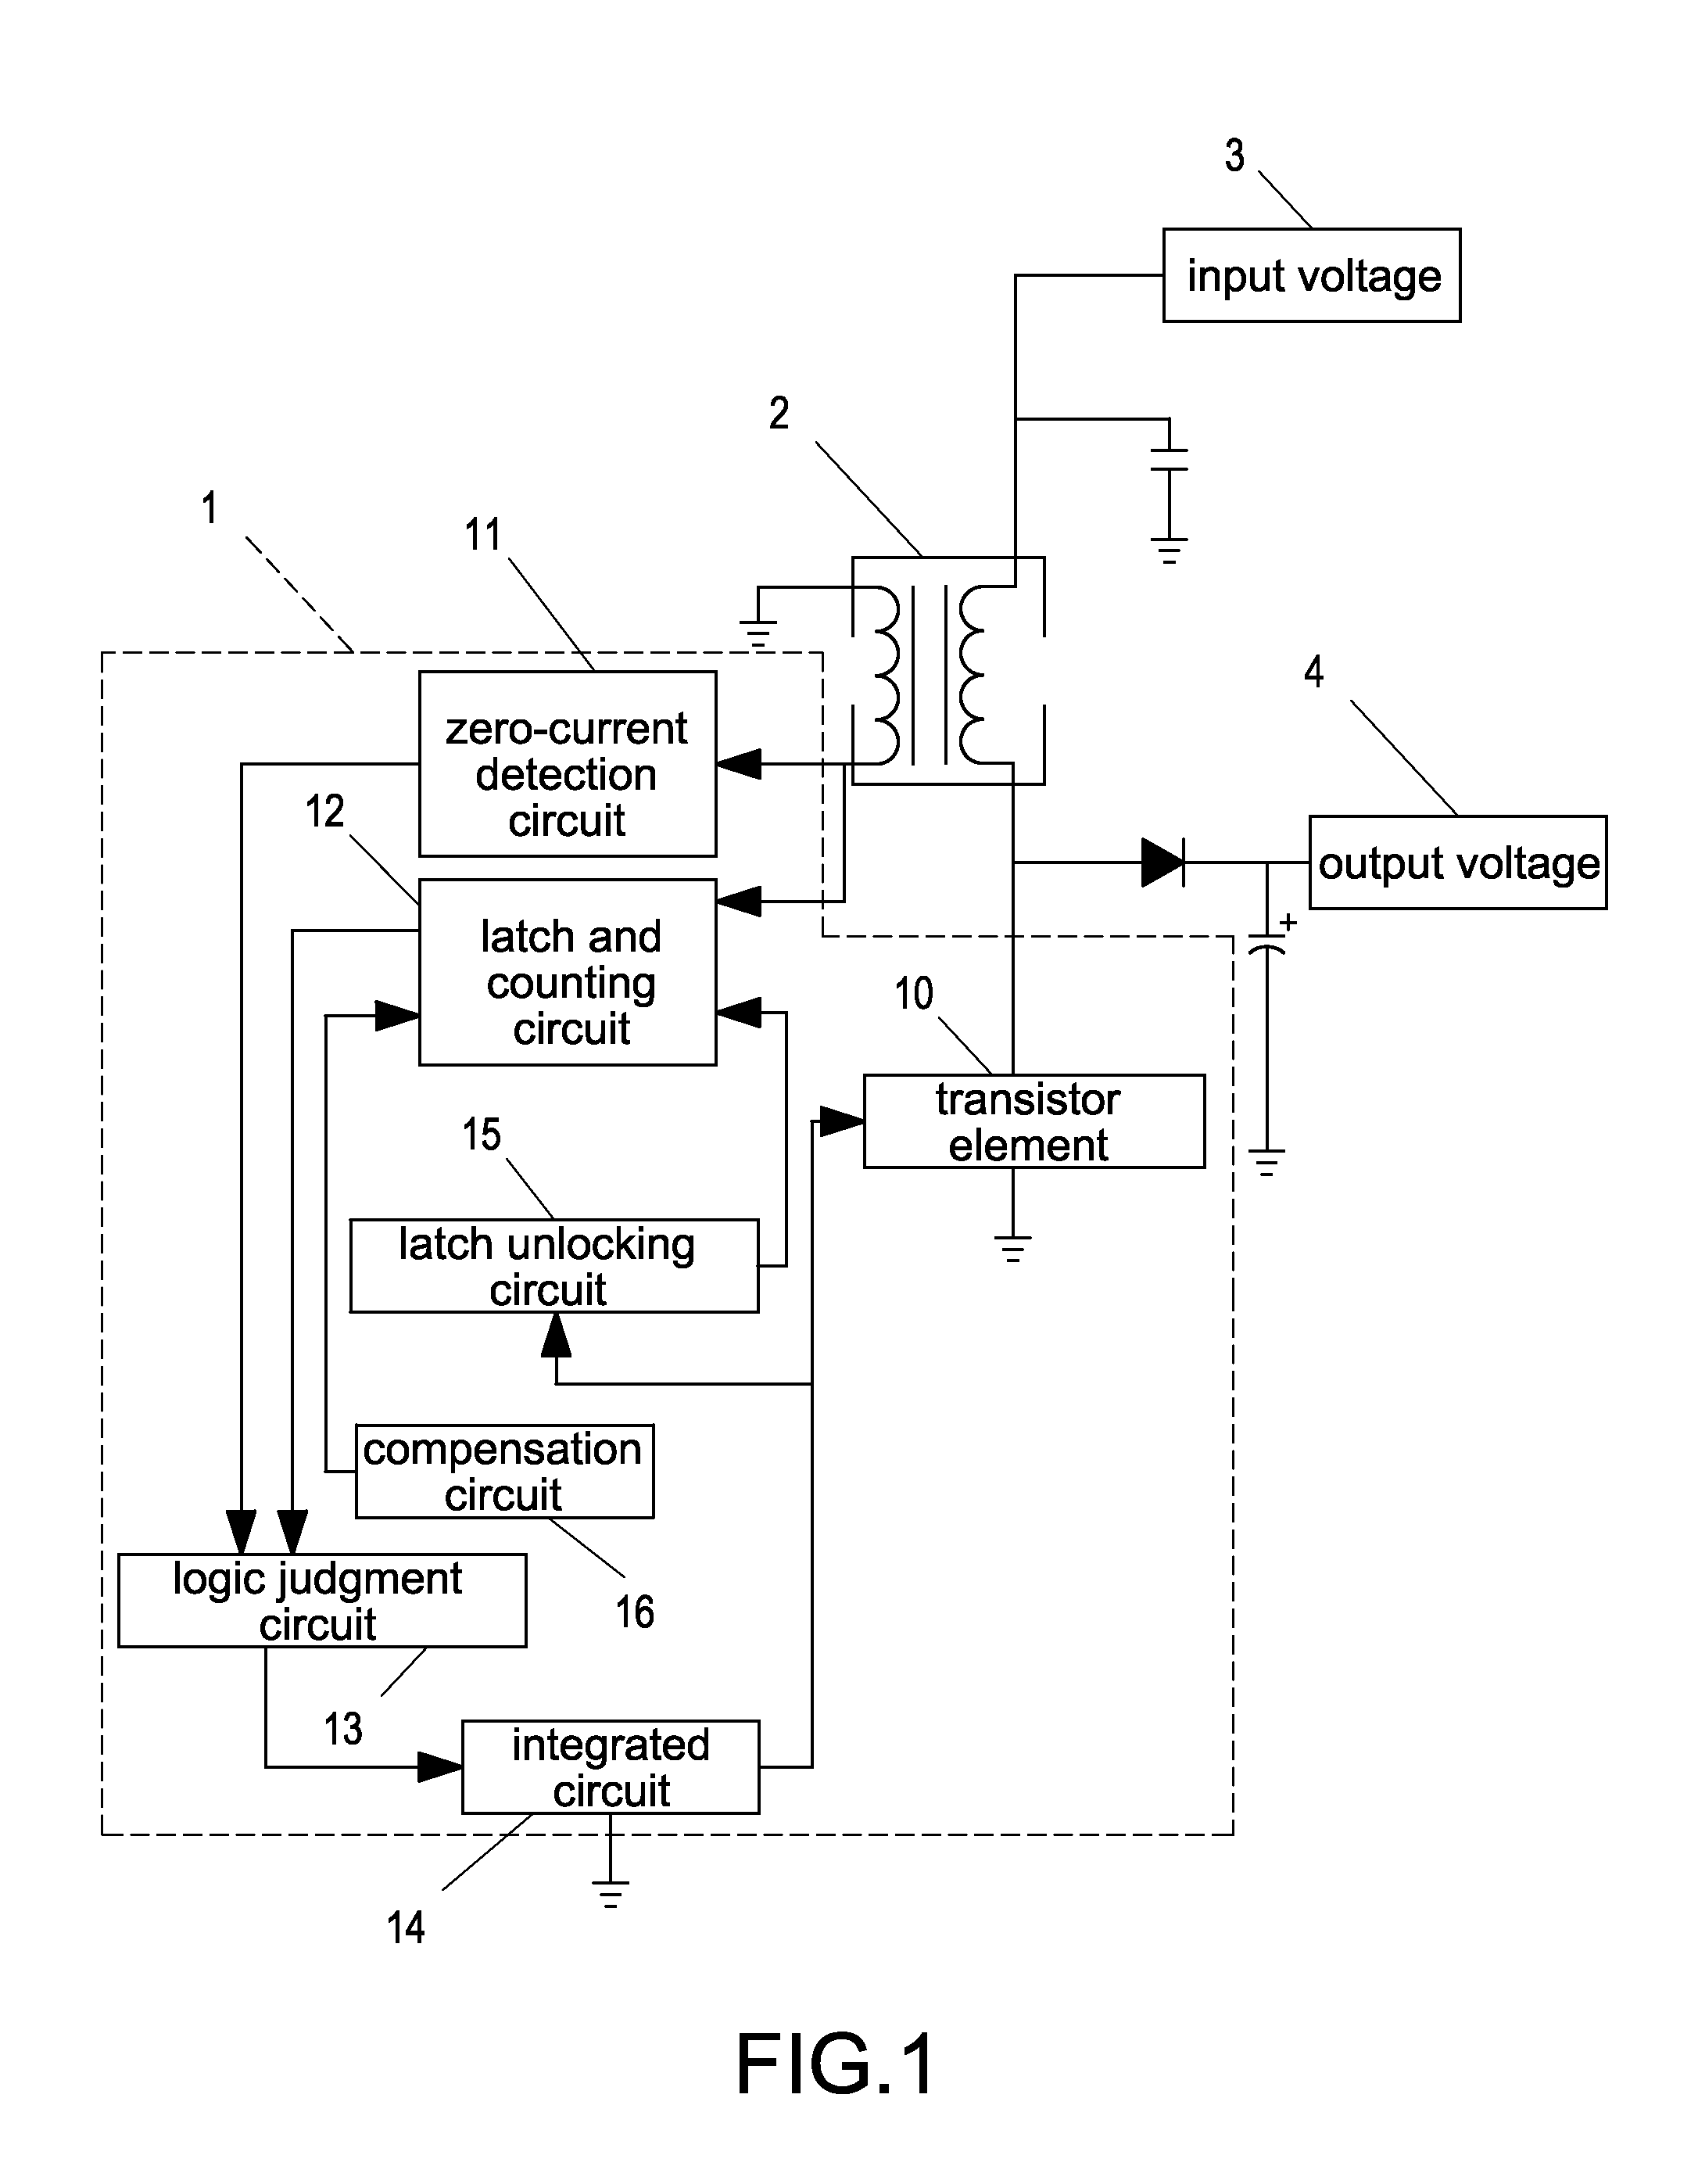 Control circuit module for power factor corrector